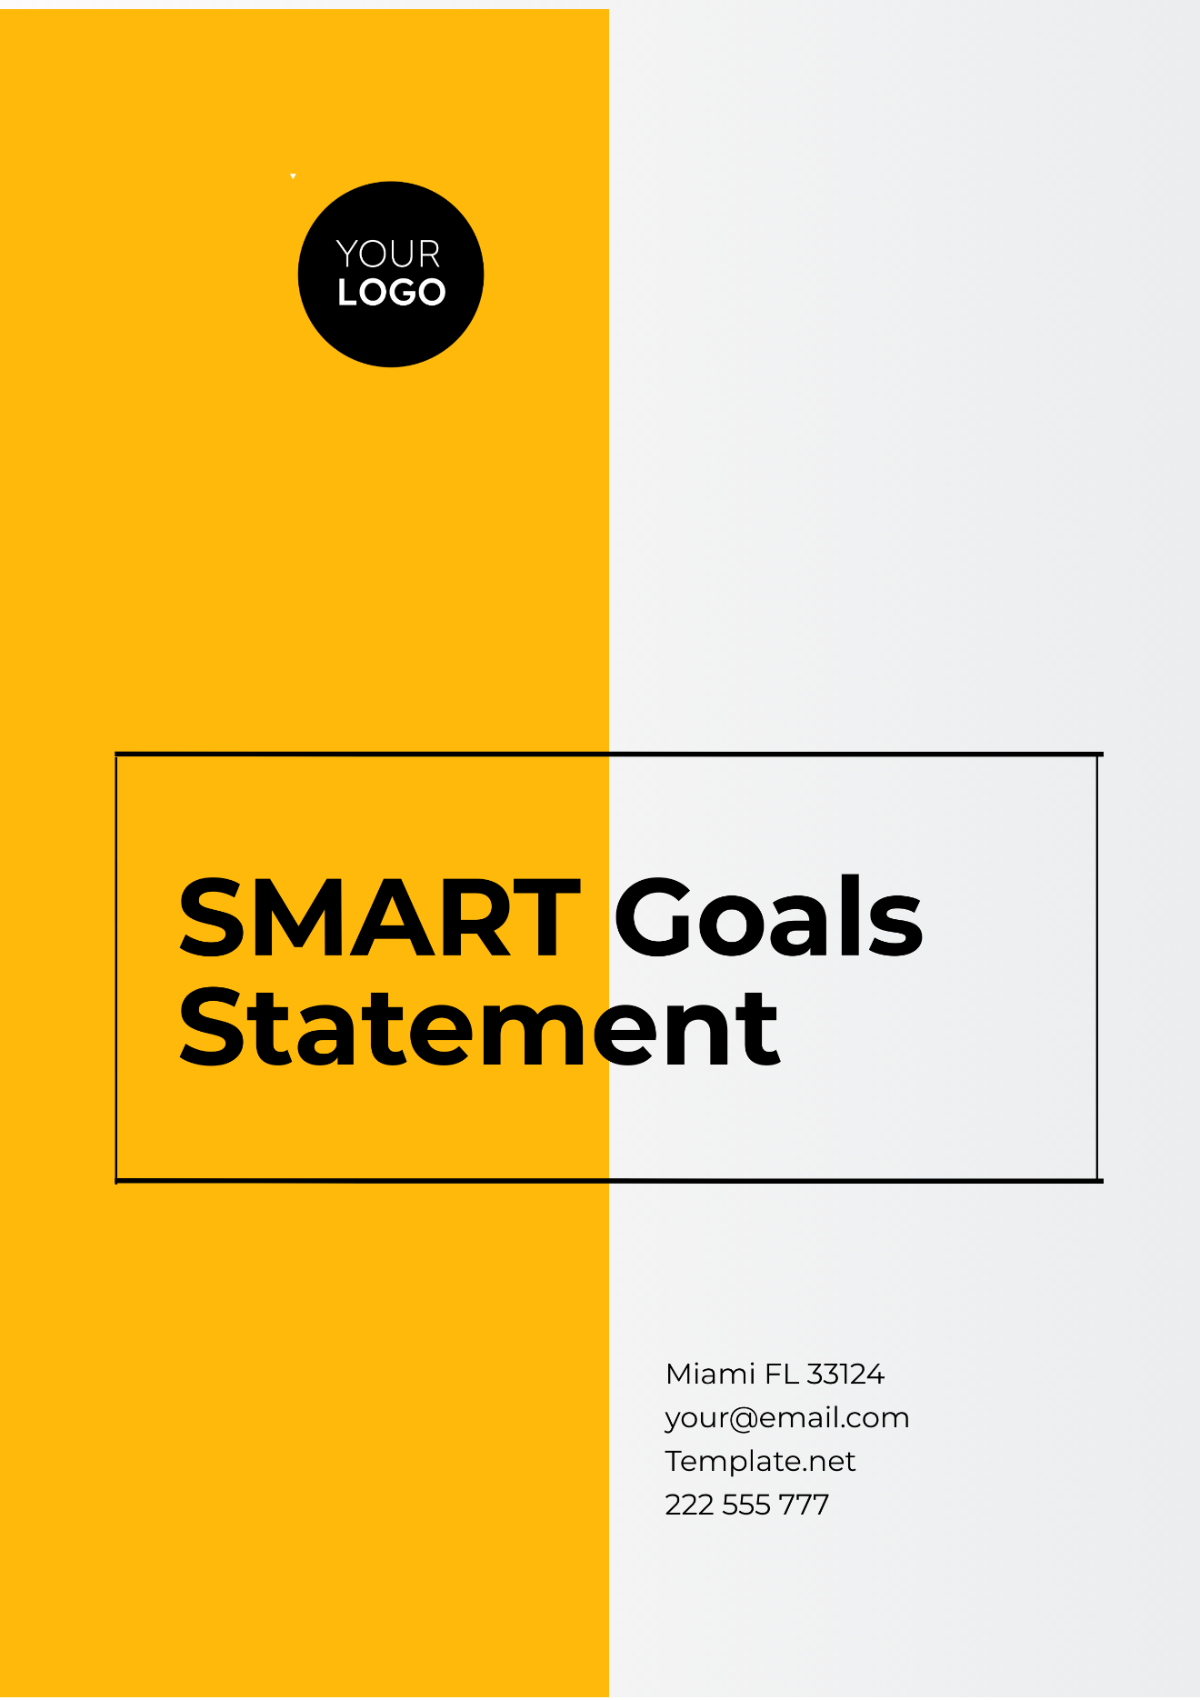 SMART Goals Statement Template